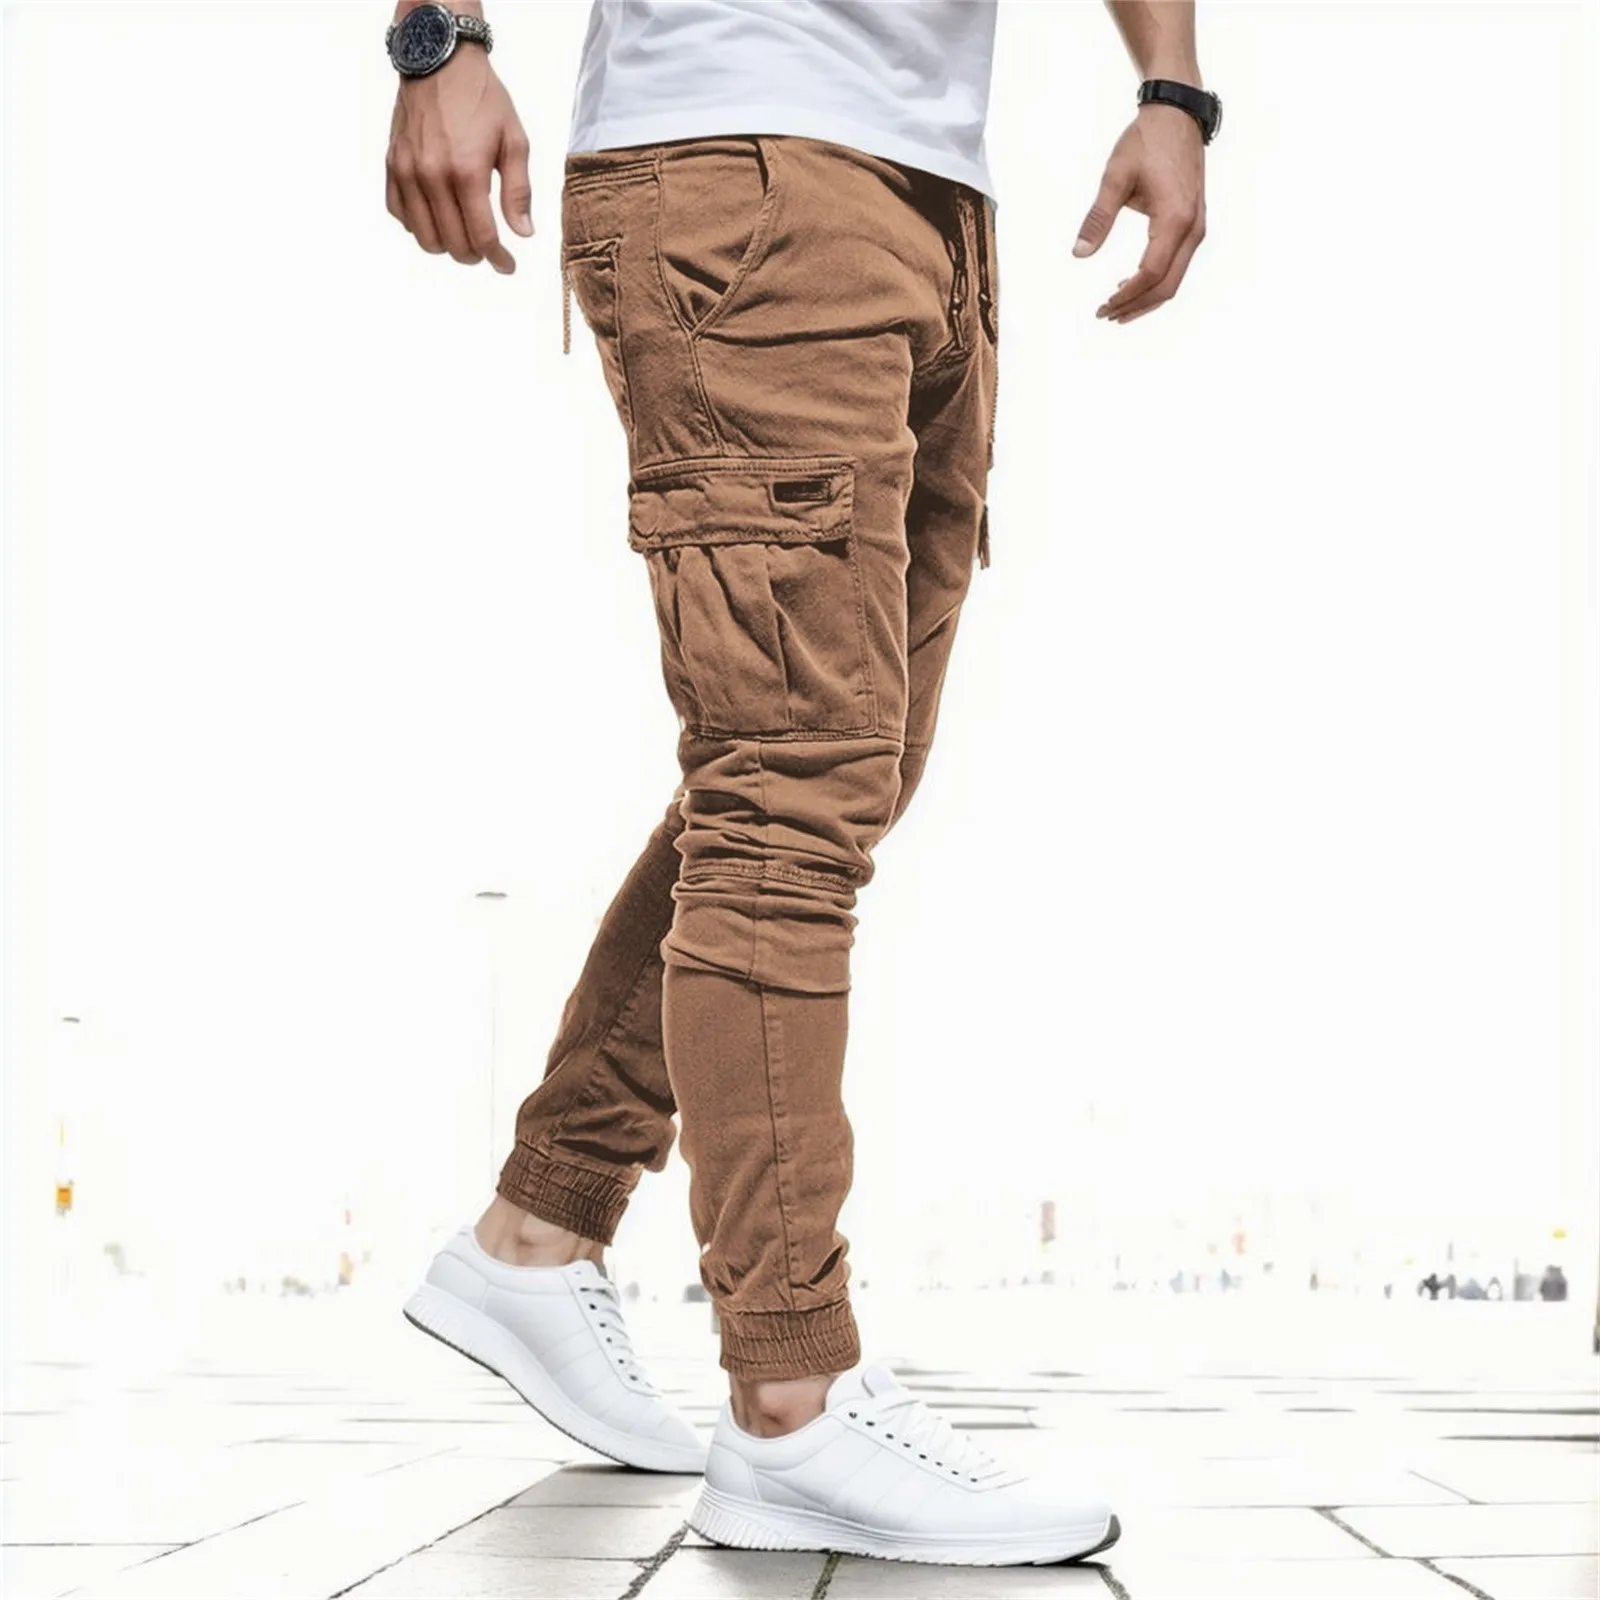 กางเกงลำลองผู้ชายแฟชั่นมีกระเป๋าขนาดใหญ่กางเกงฮาเร็มฮิปฮอปกางเกงวอร์มคุณภาพสูงกางเกงขายาวผู้ชาย